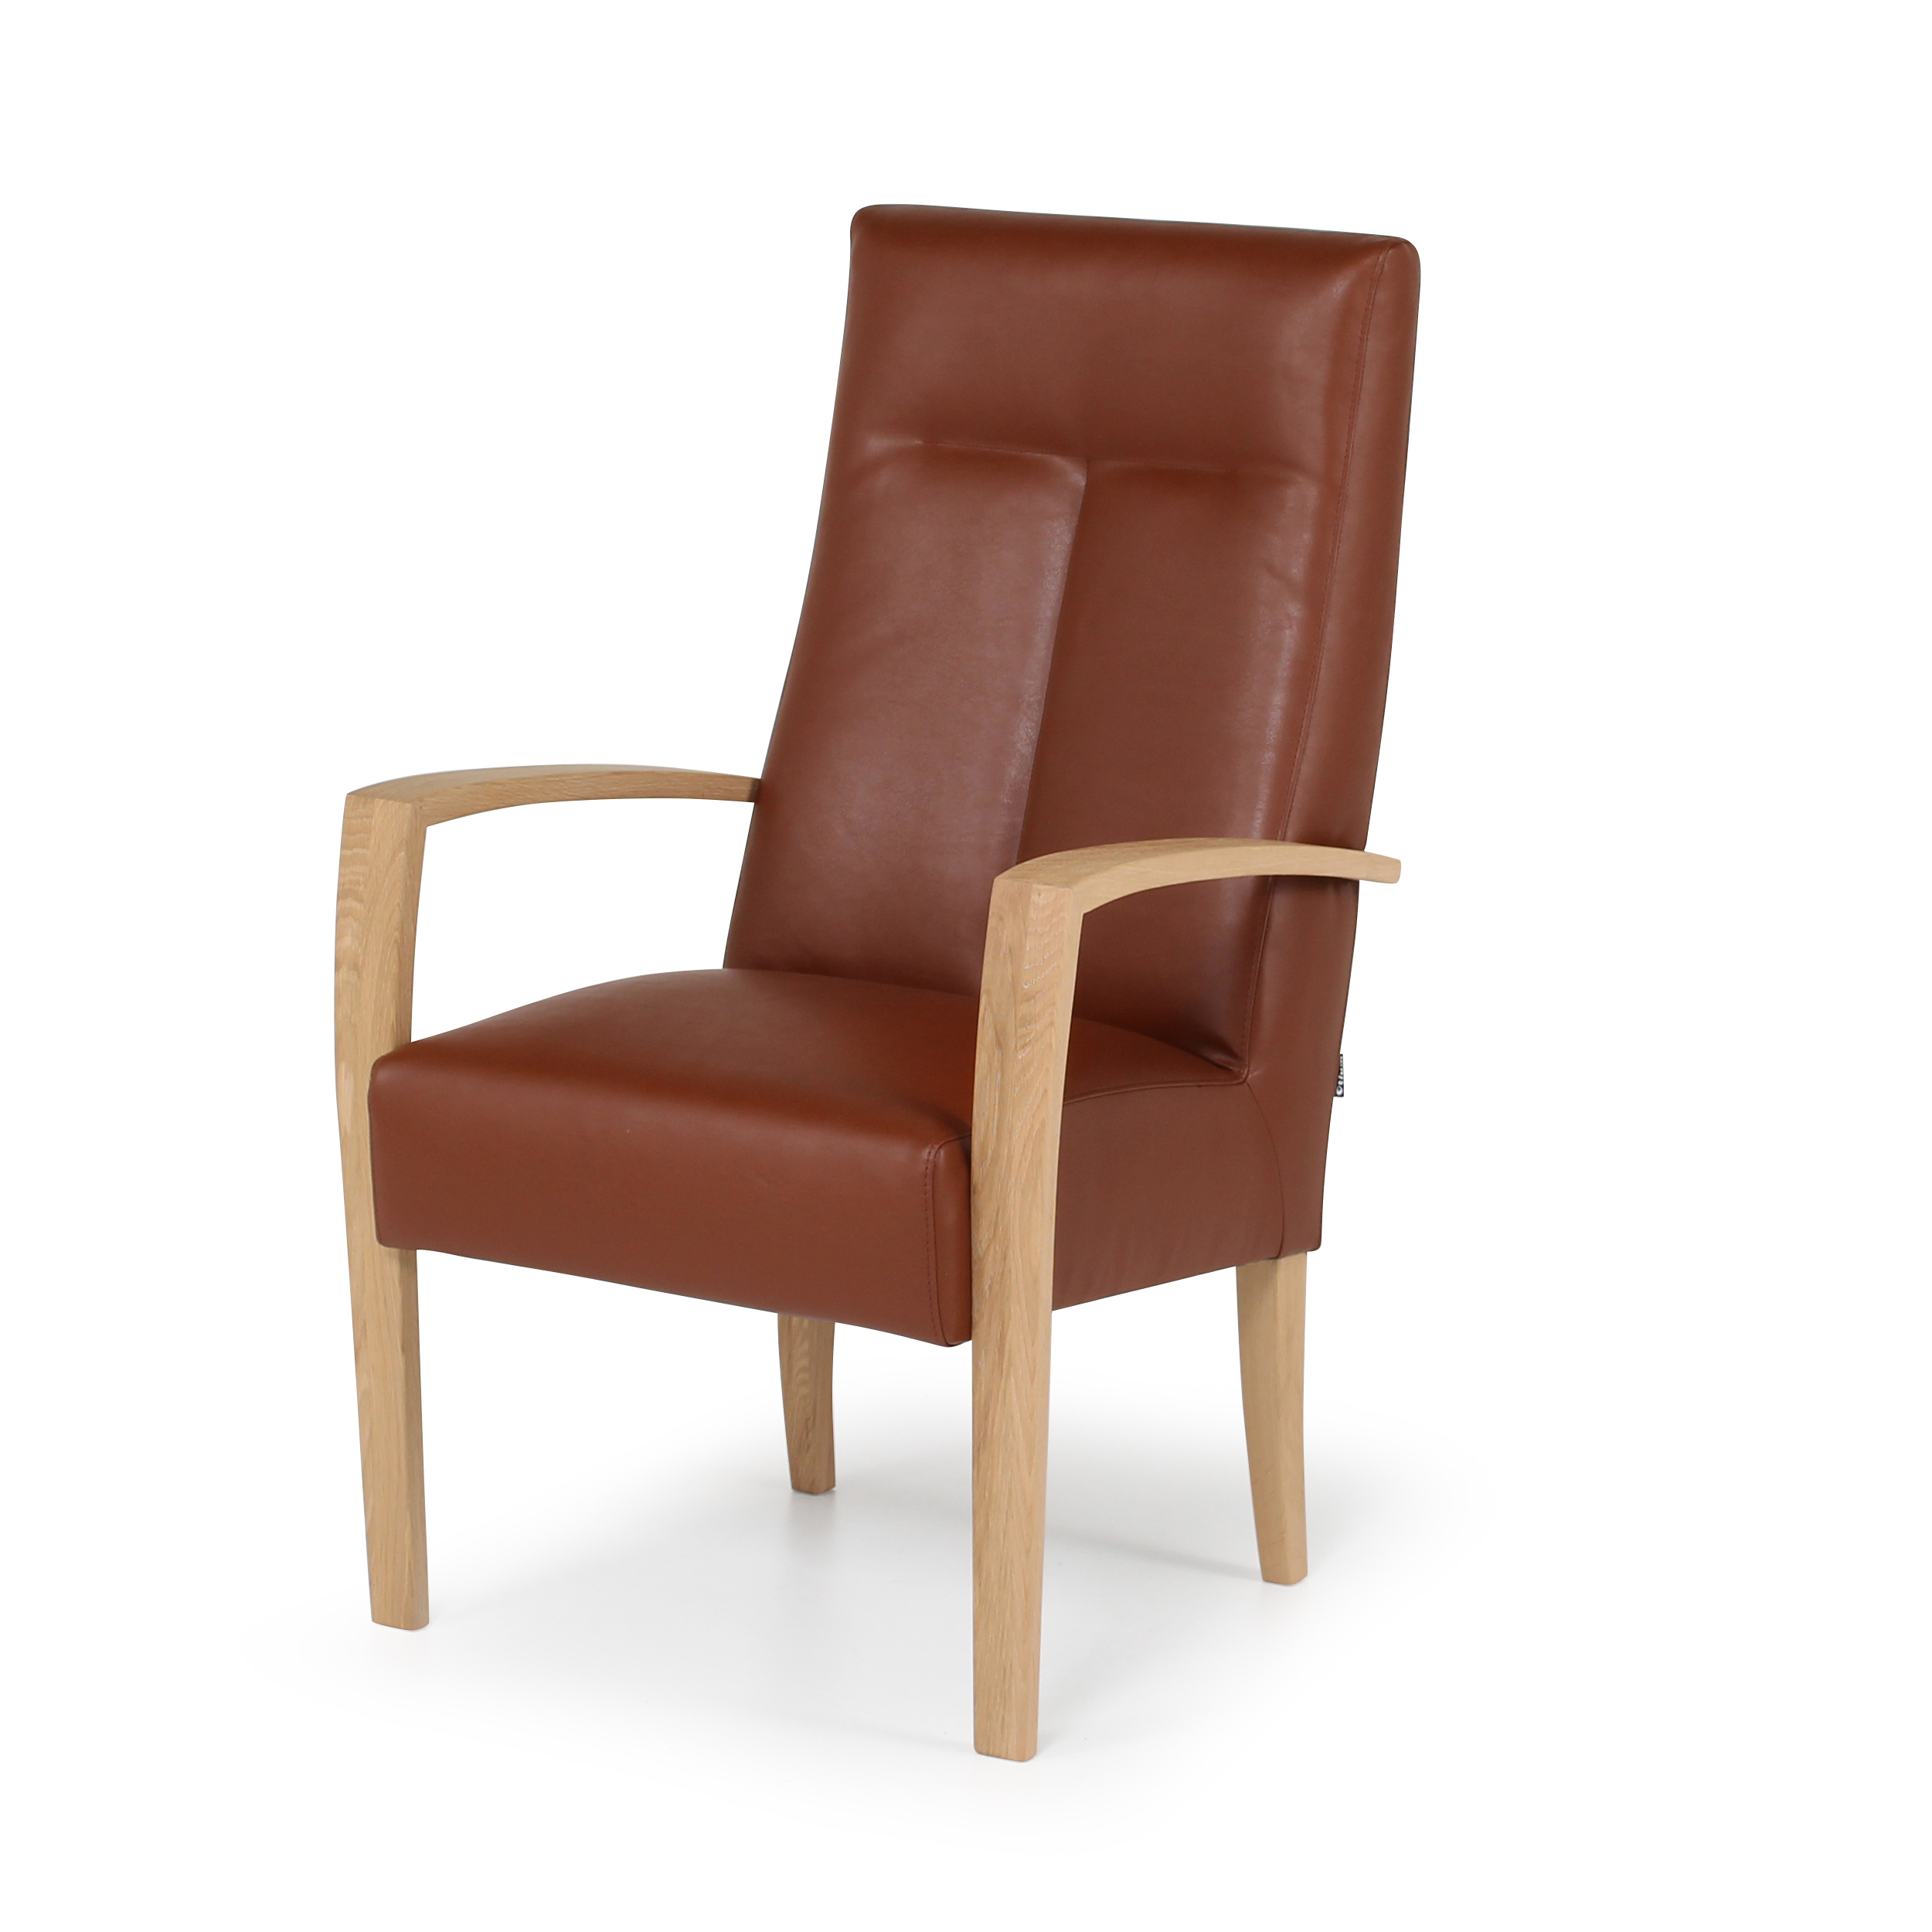 Gelovige luchthaven Slot Senioren stoelen - Comfortabele, ergonomische stoelen op maat gemaakt